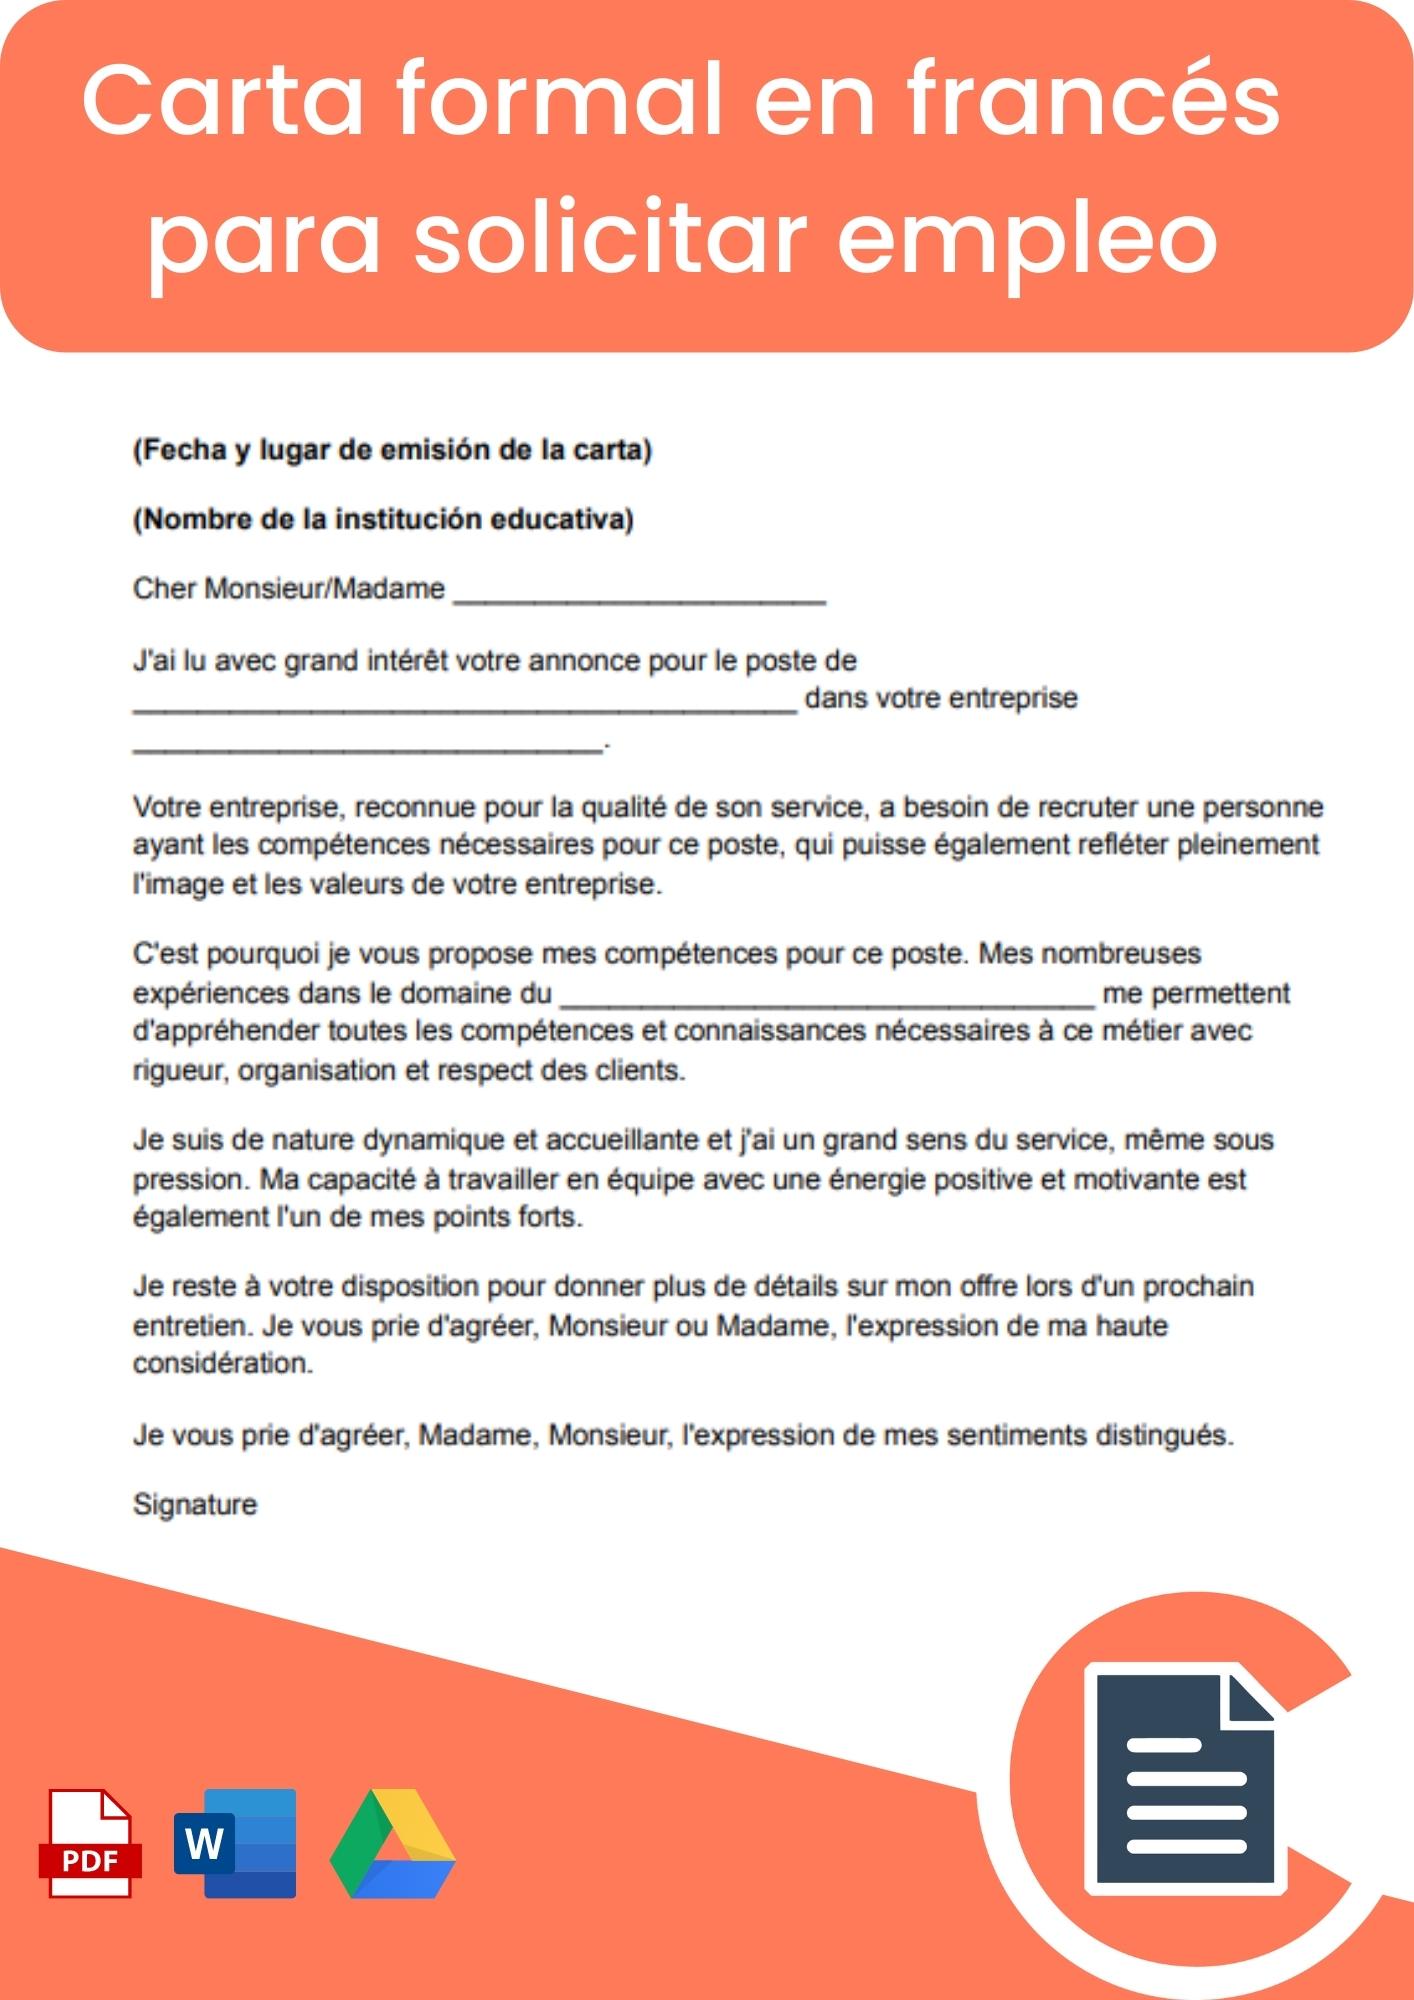 Carta formal en francés para solicitar empleo